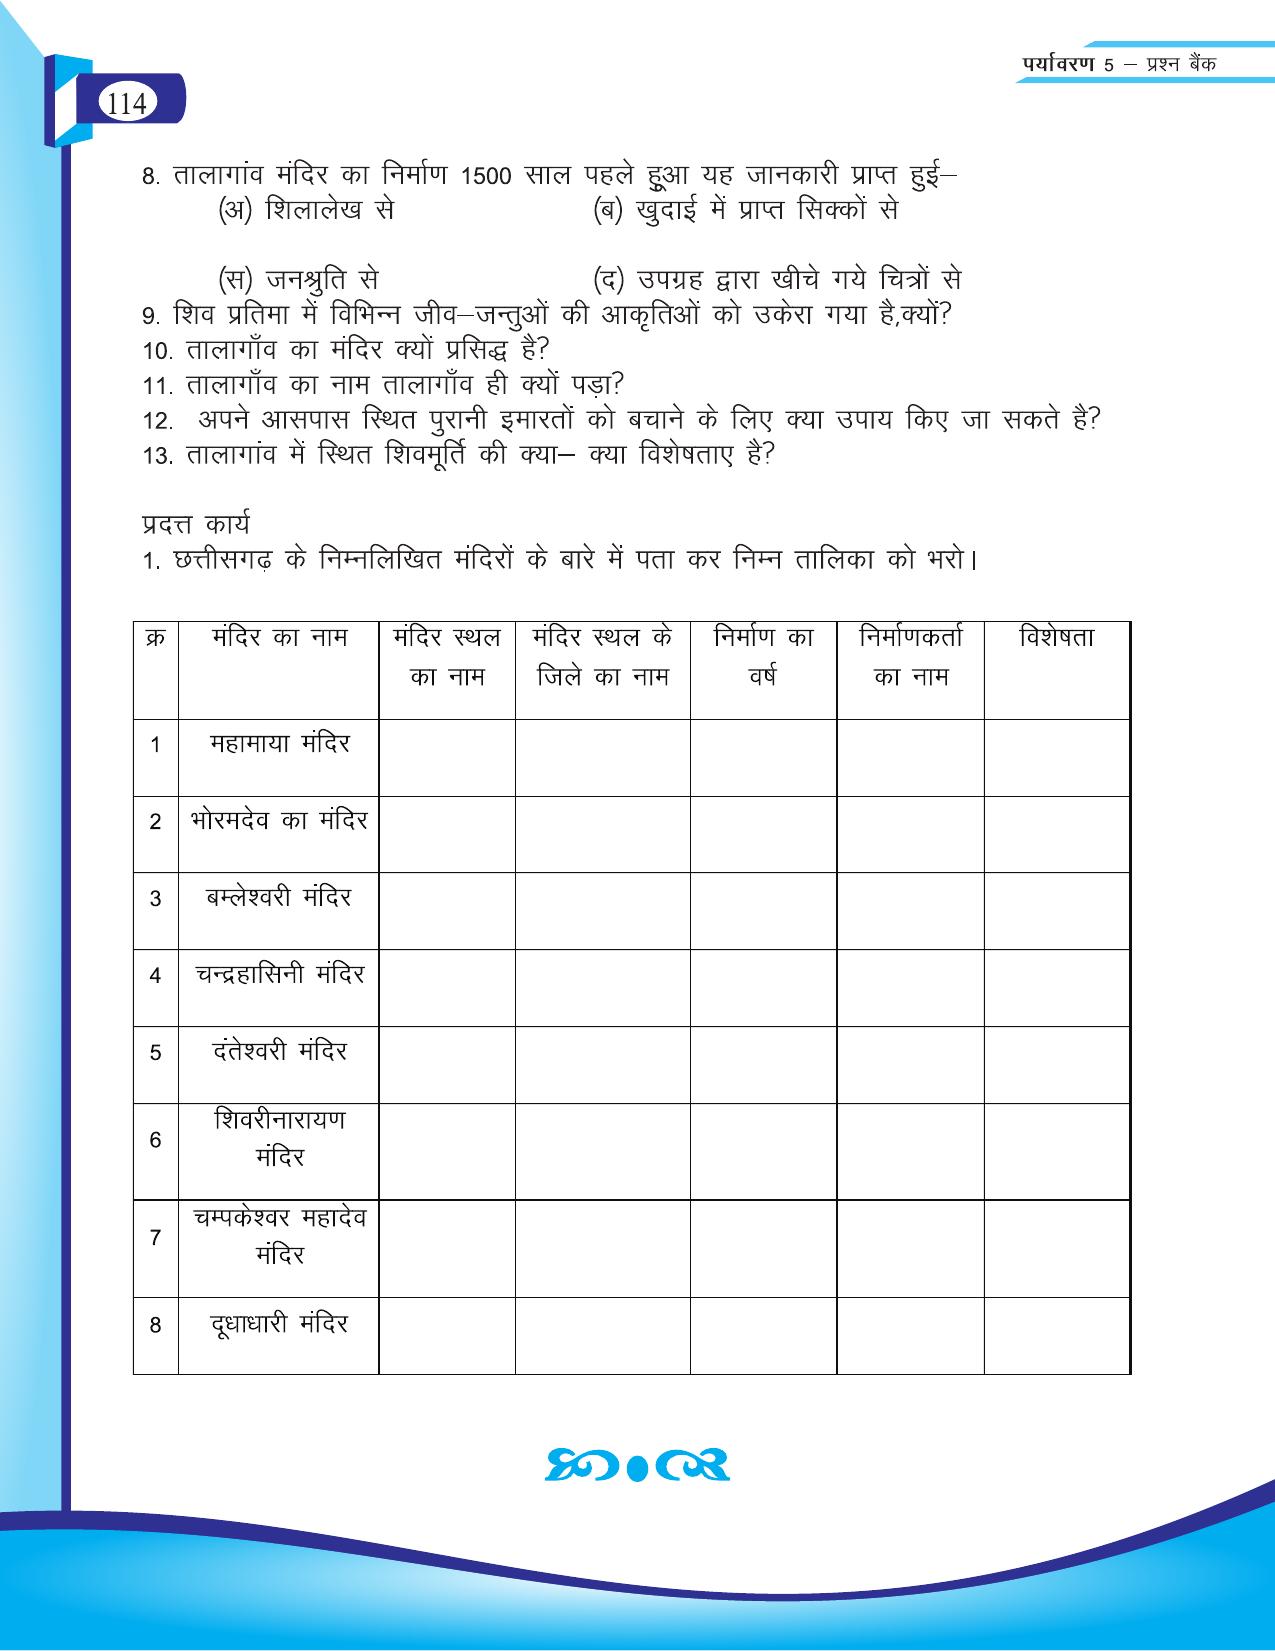 Chhattisgarh Board Class 5 EVS Question Bank 2015-16 - Page 40